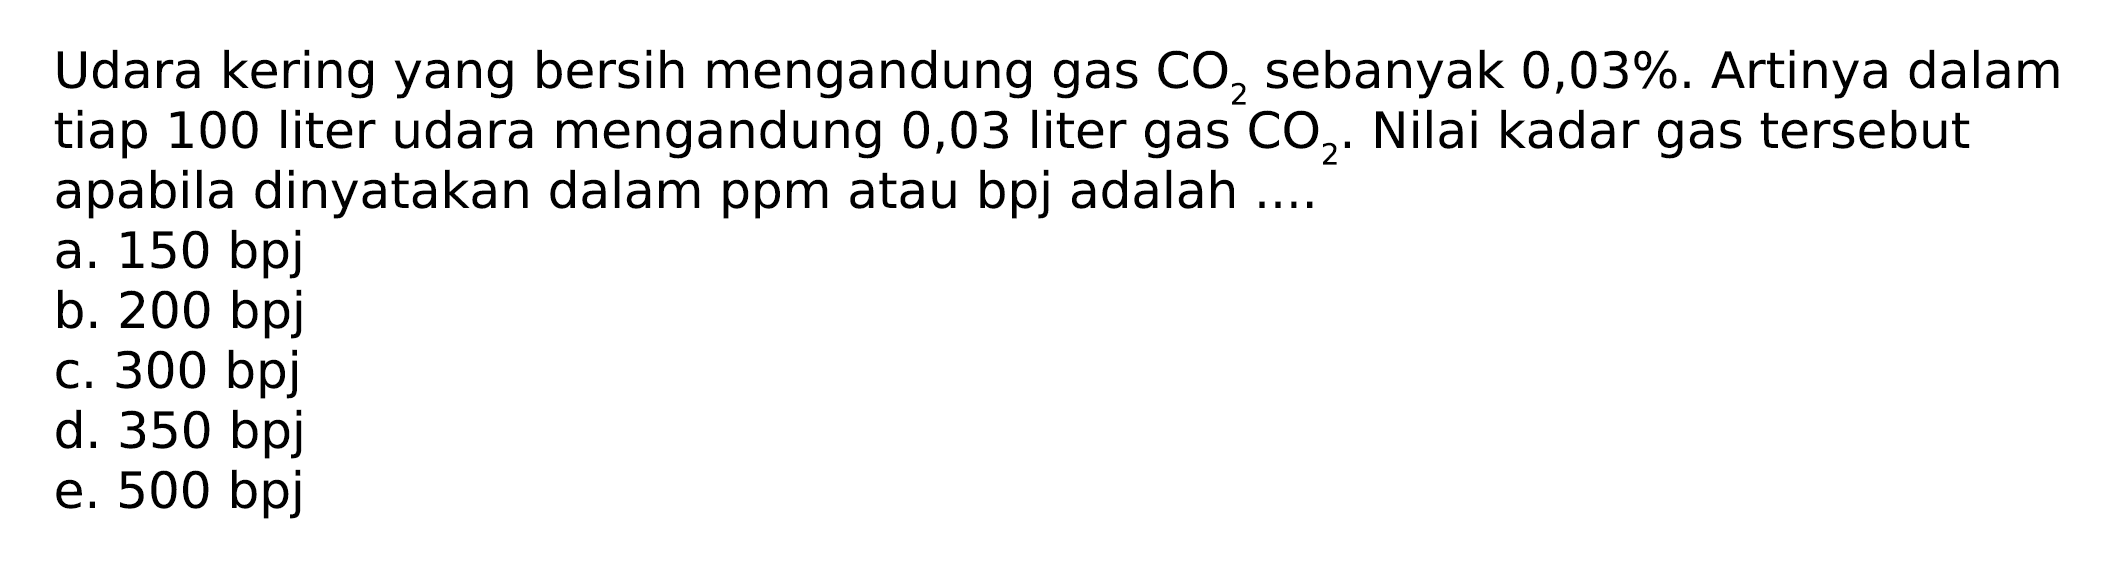 Udara kering yang bersih mengandung gas CO2 sebanyak 0,03 %. Artinya dalam tiap 100 liter udara mengandung 0,03 liter gas CO2. Nilai kadar gas tersebut apabila dinyatakan dalam ppm atau bpj adalah....
